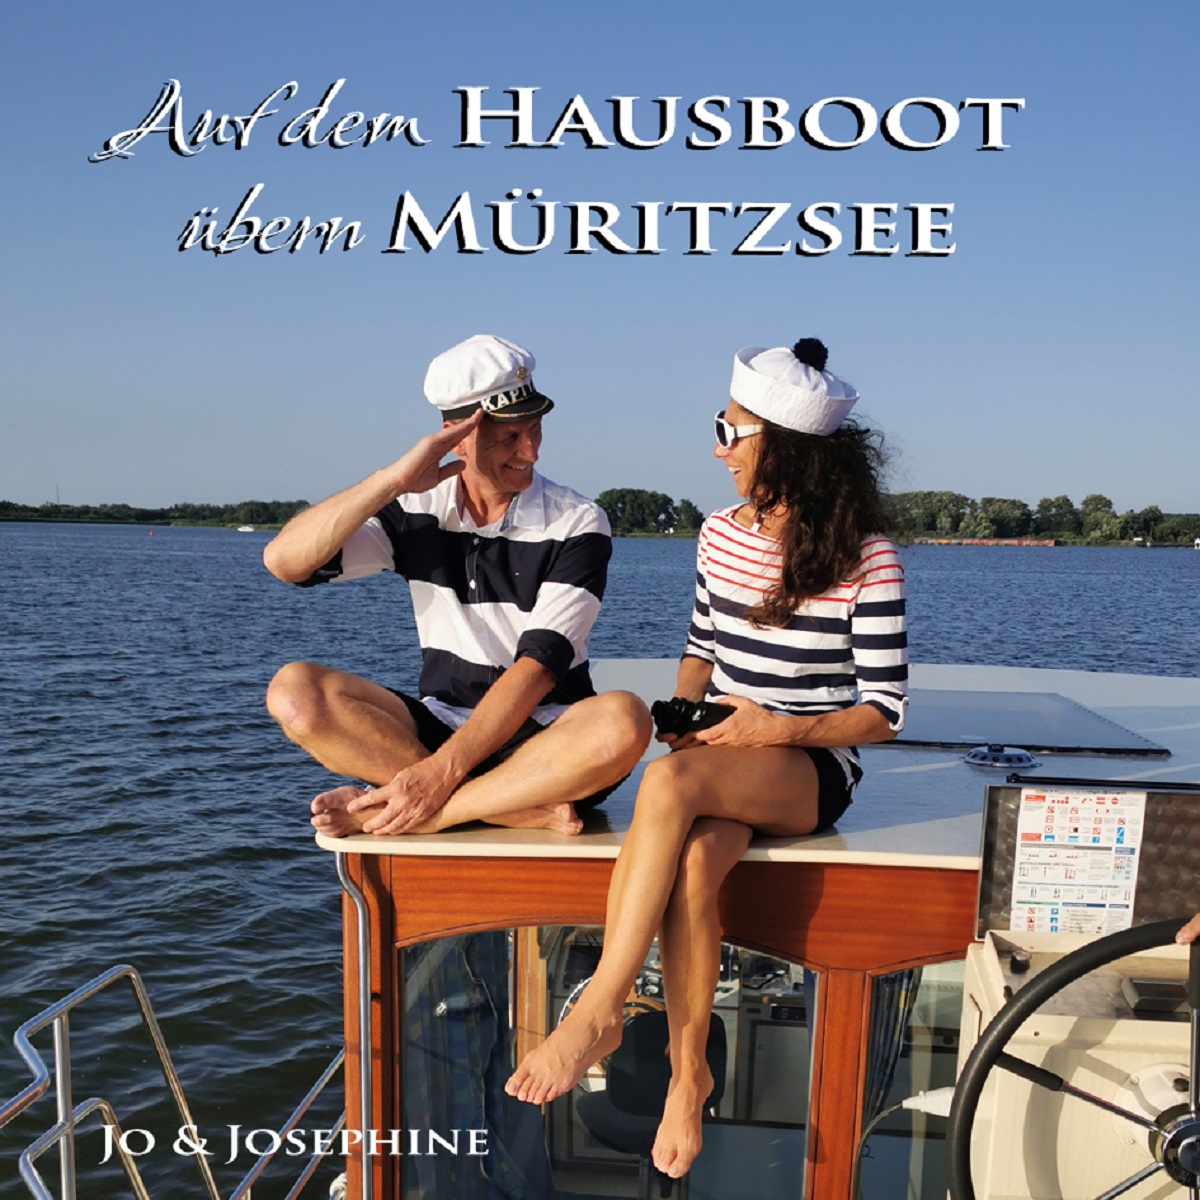 Jo und Josephine - Auf dem Hausboot bern Mritzsee - Cover 1.jpg